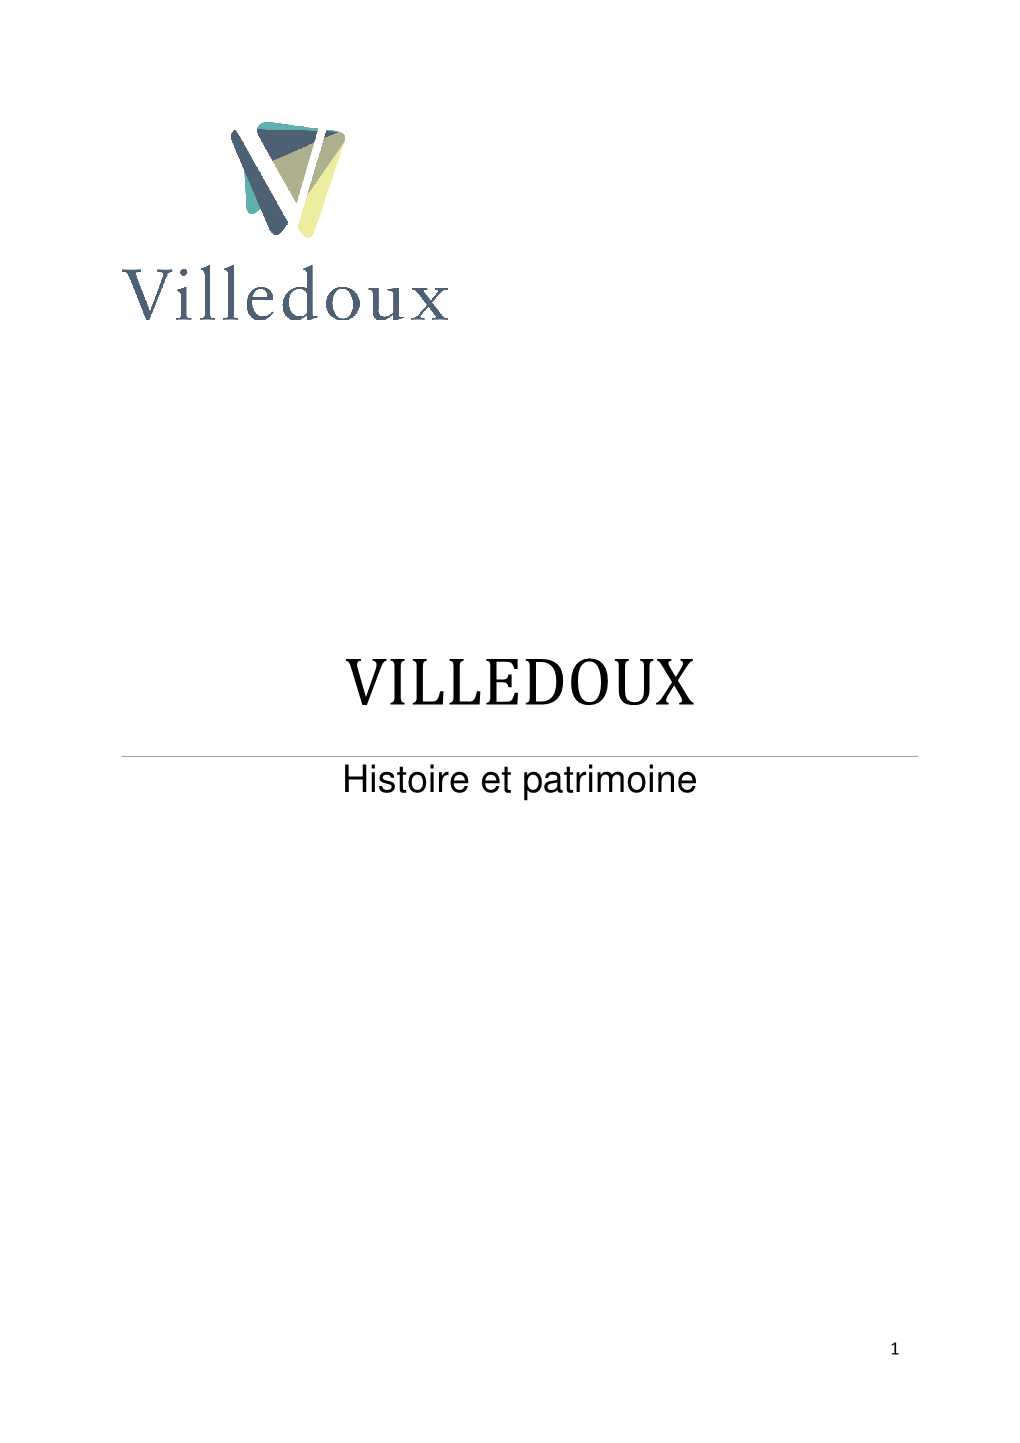 L'histoire De Villedoux Consiste En Une Succession De Transfert De Ses Terres Riches Et Propices À La Culture De La Vigne, De Mains Laïques En Mains Religieuses